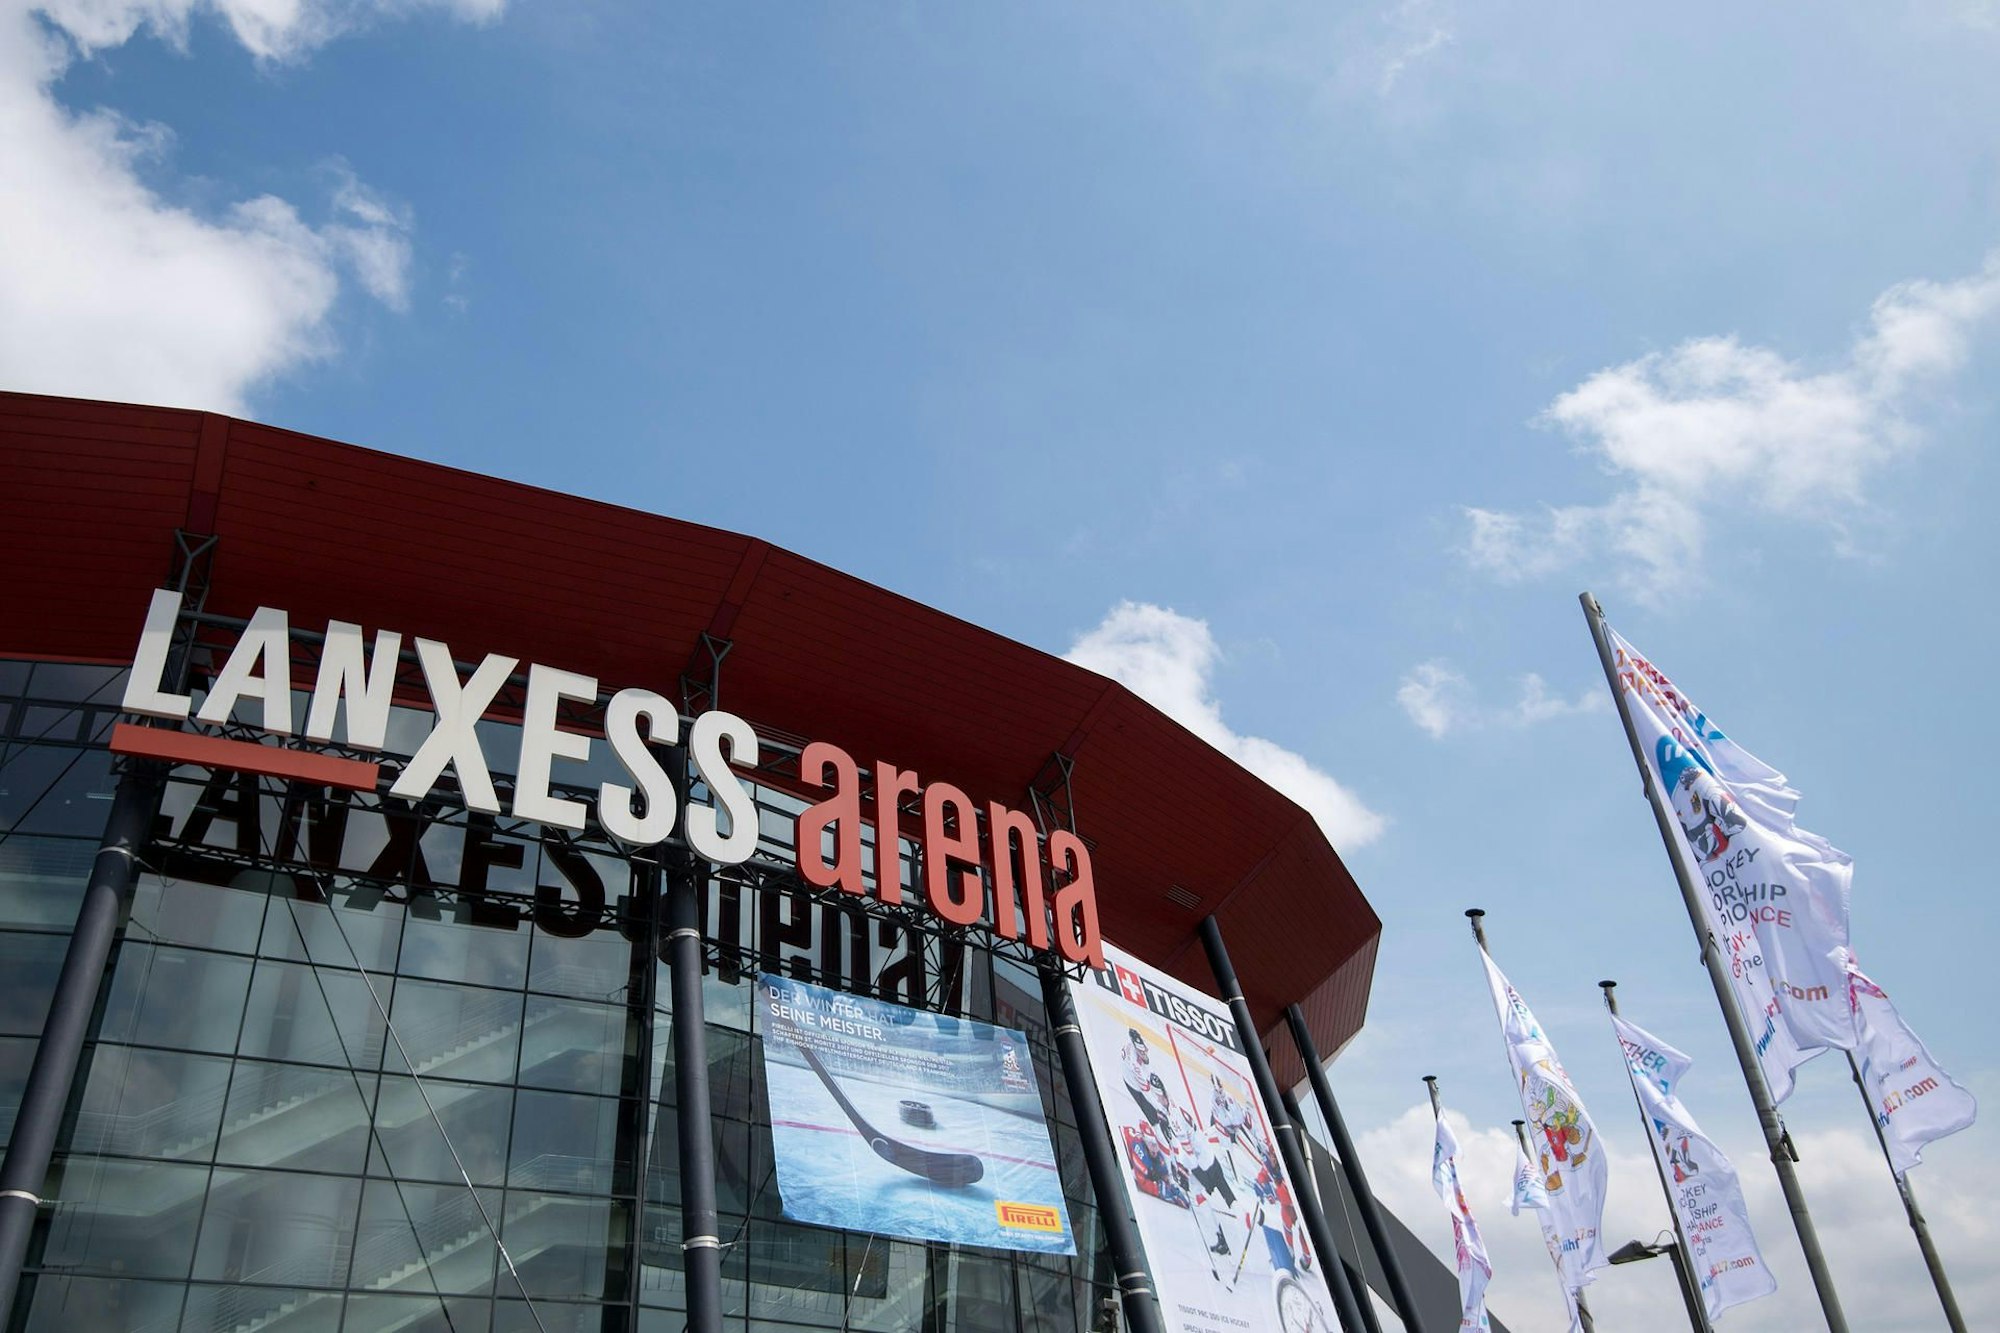 Die Lanxess-Arena in Köln (Nordrhein-Westfalen), aufgenommen am 03.05.2017. Hier findet am 05.05.2017 das Eröffnungsspiel der Eishockey-WM statt. Die WM wird in Köln und Paris ausgetragen. Foto: Marius Becker/dpa +++(c) dpa - Bildfunk+++